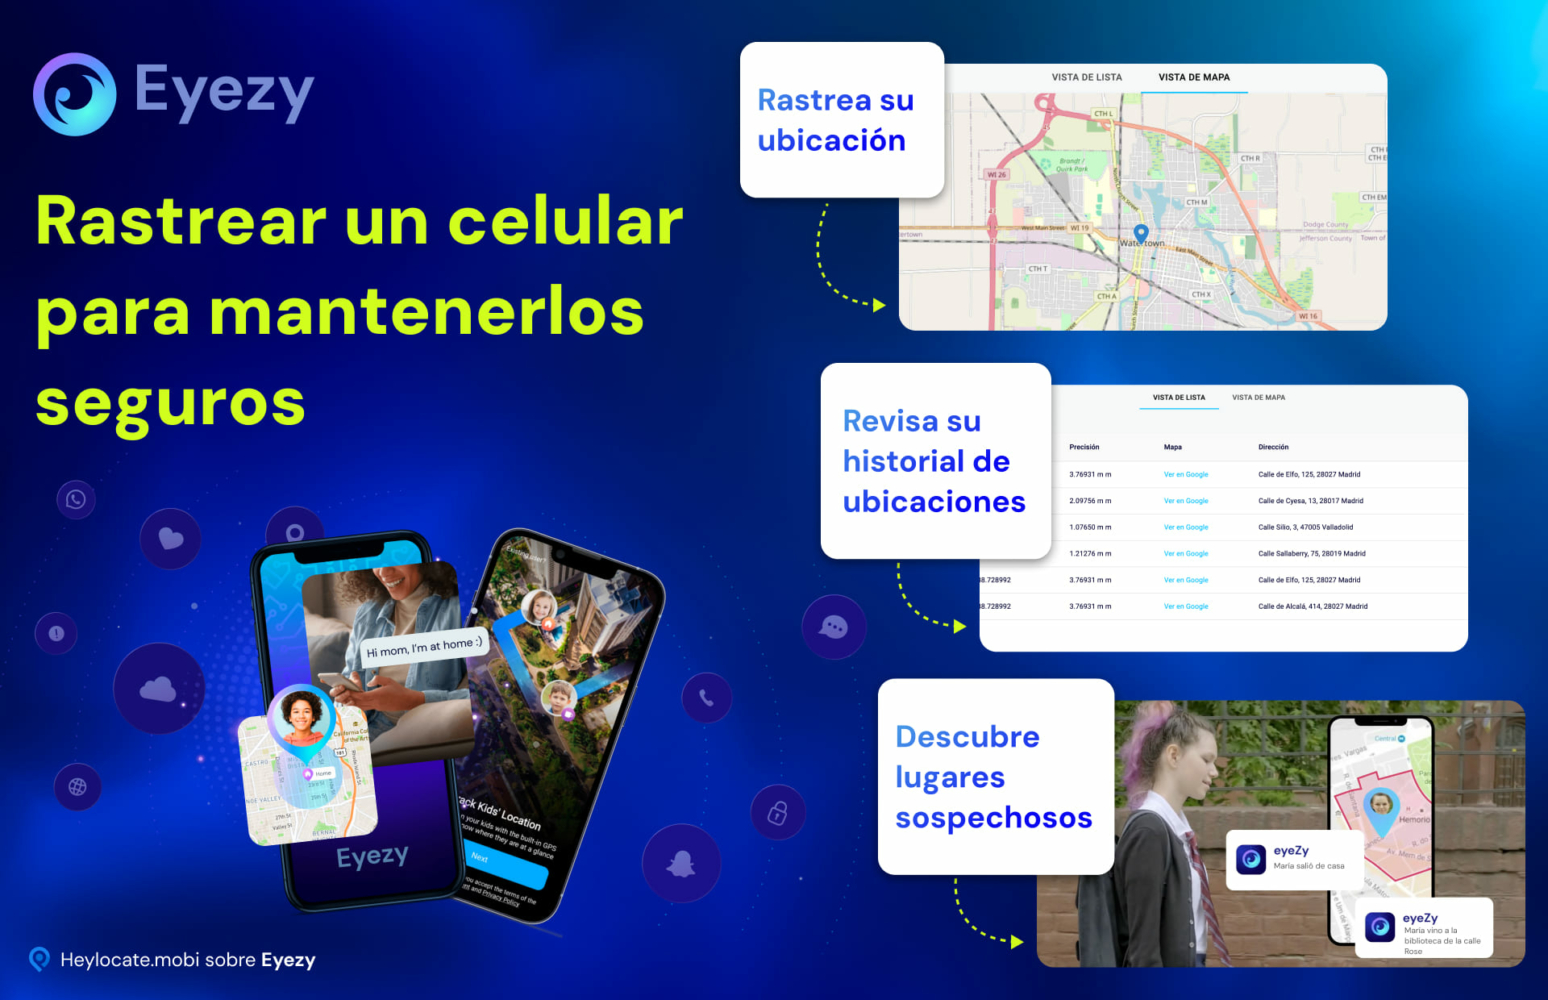 Eyezy muestra la función de rastreo de teléfonos móviles, con imágenes del seguimiento de la ubicación de una persona, la visualización del historial de ubicaciones y el descubrimiento de ubicaciones sospechosas en una interfaz de mapa.